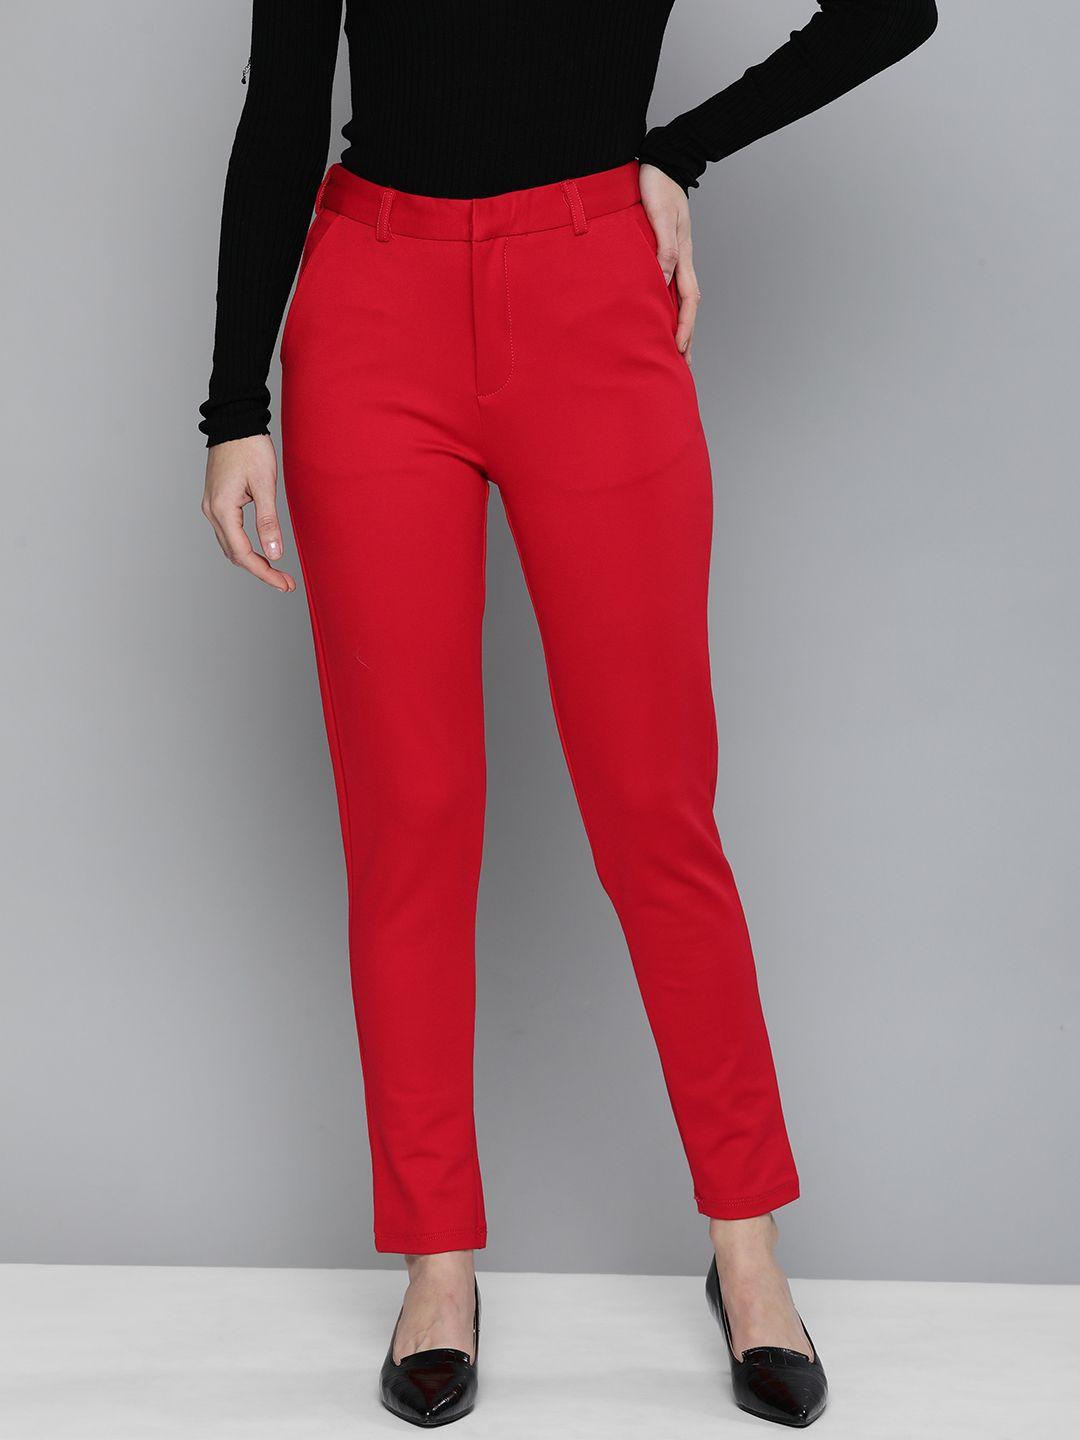 tokyo talkies women red solid slim fit trousers